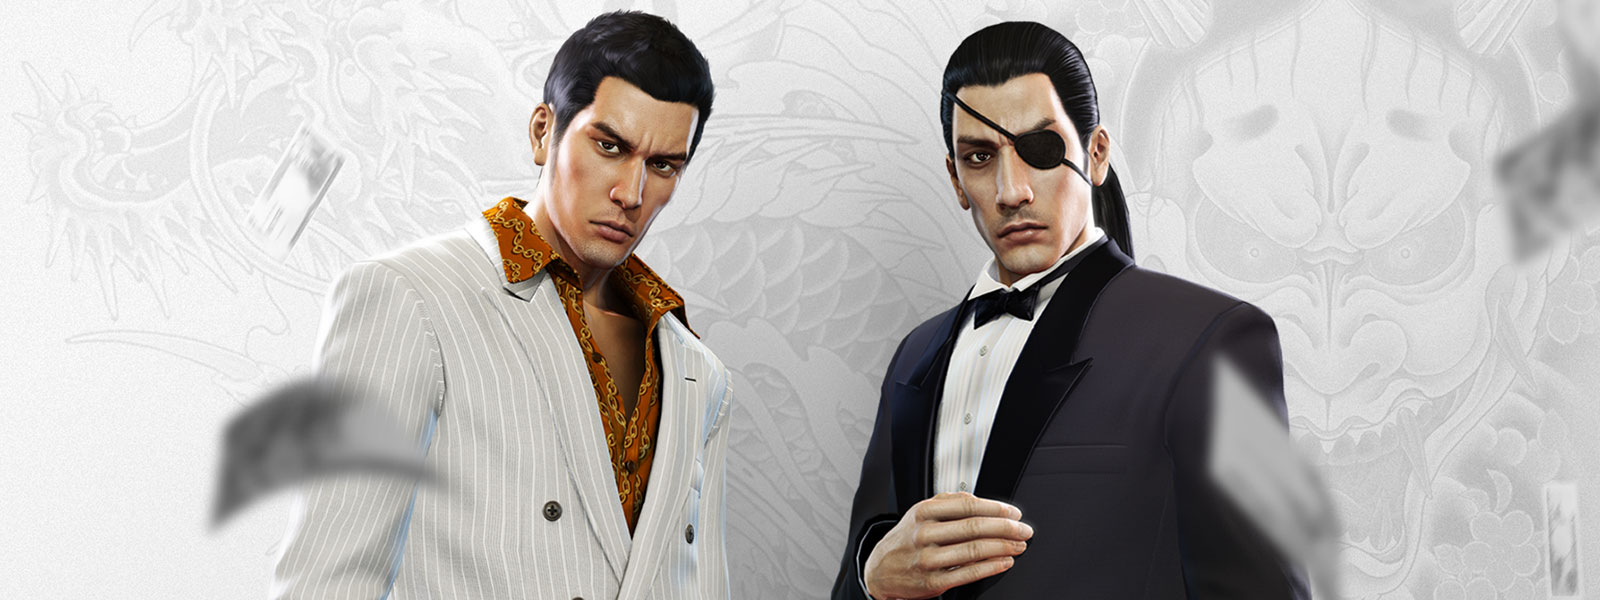 Kaksi hienoissa puvuissa olevaa Yakuza-hahmoa tuijottavat, kun rahaa putoaa heidän ympärilleen valkoista ja harmaata lohikäärmetatuointitaustaa vasten.